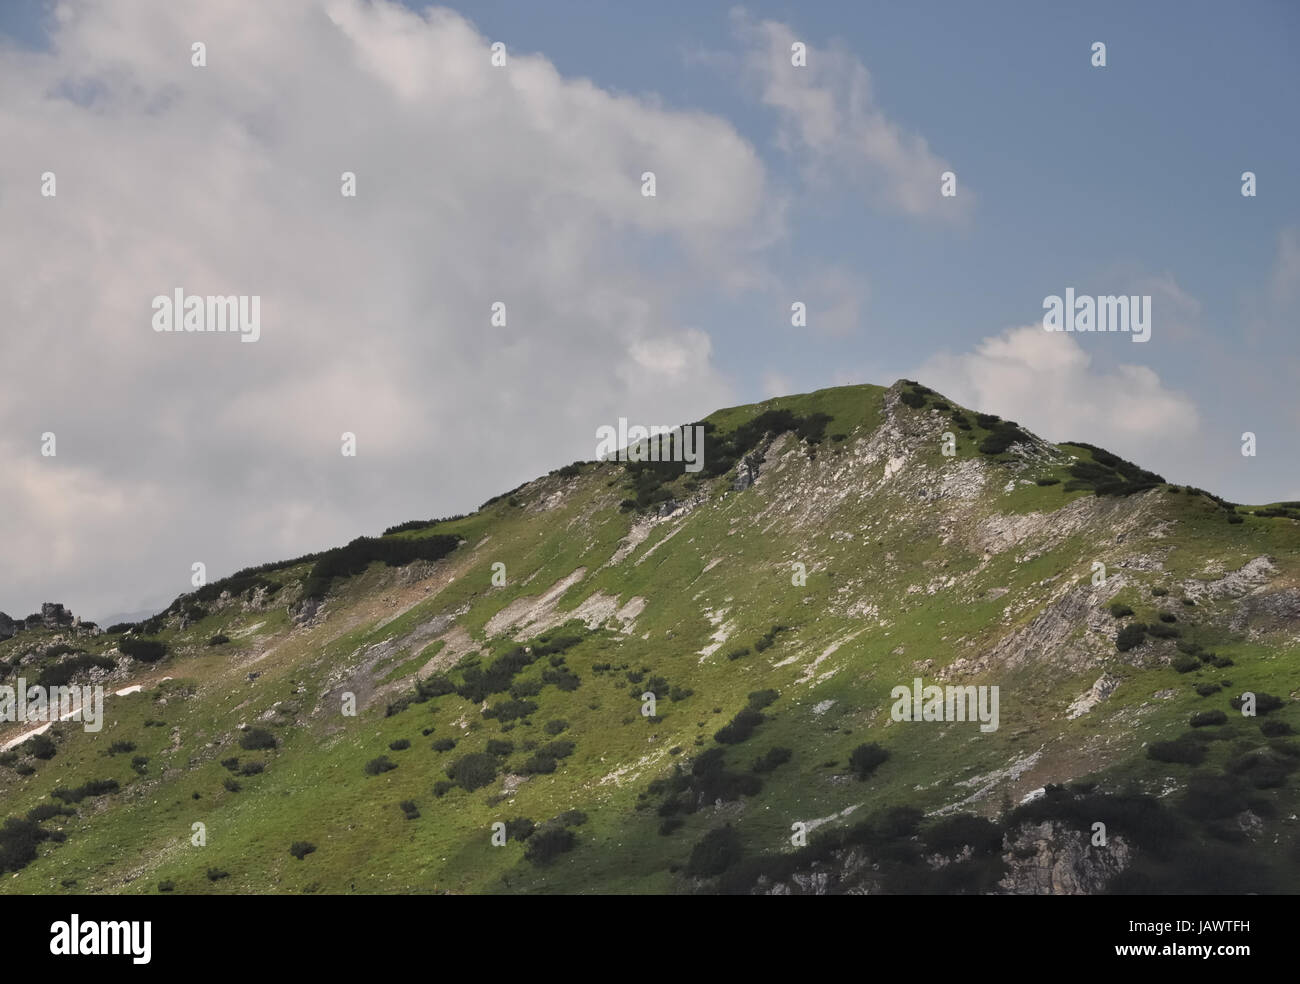 arche, berge, berge, gebirge, zauchensee, radstätter tauern, österreich, gipfel, niedere tauern, alpen Stock Photo